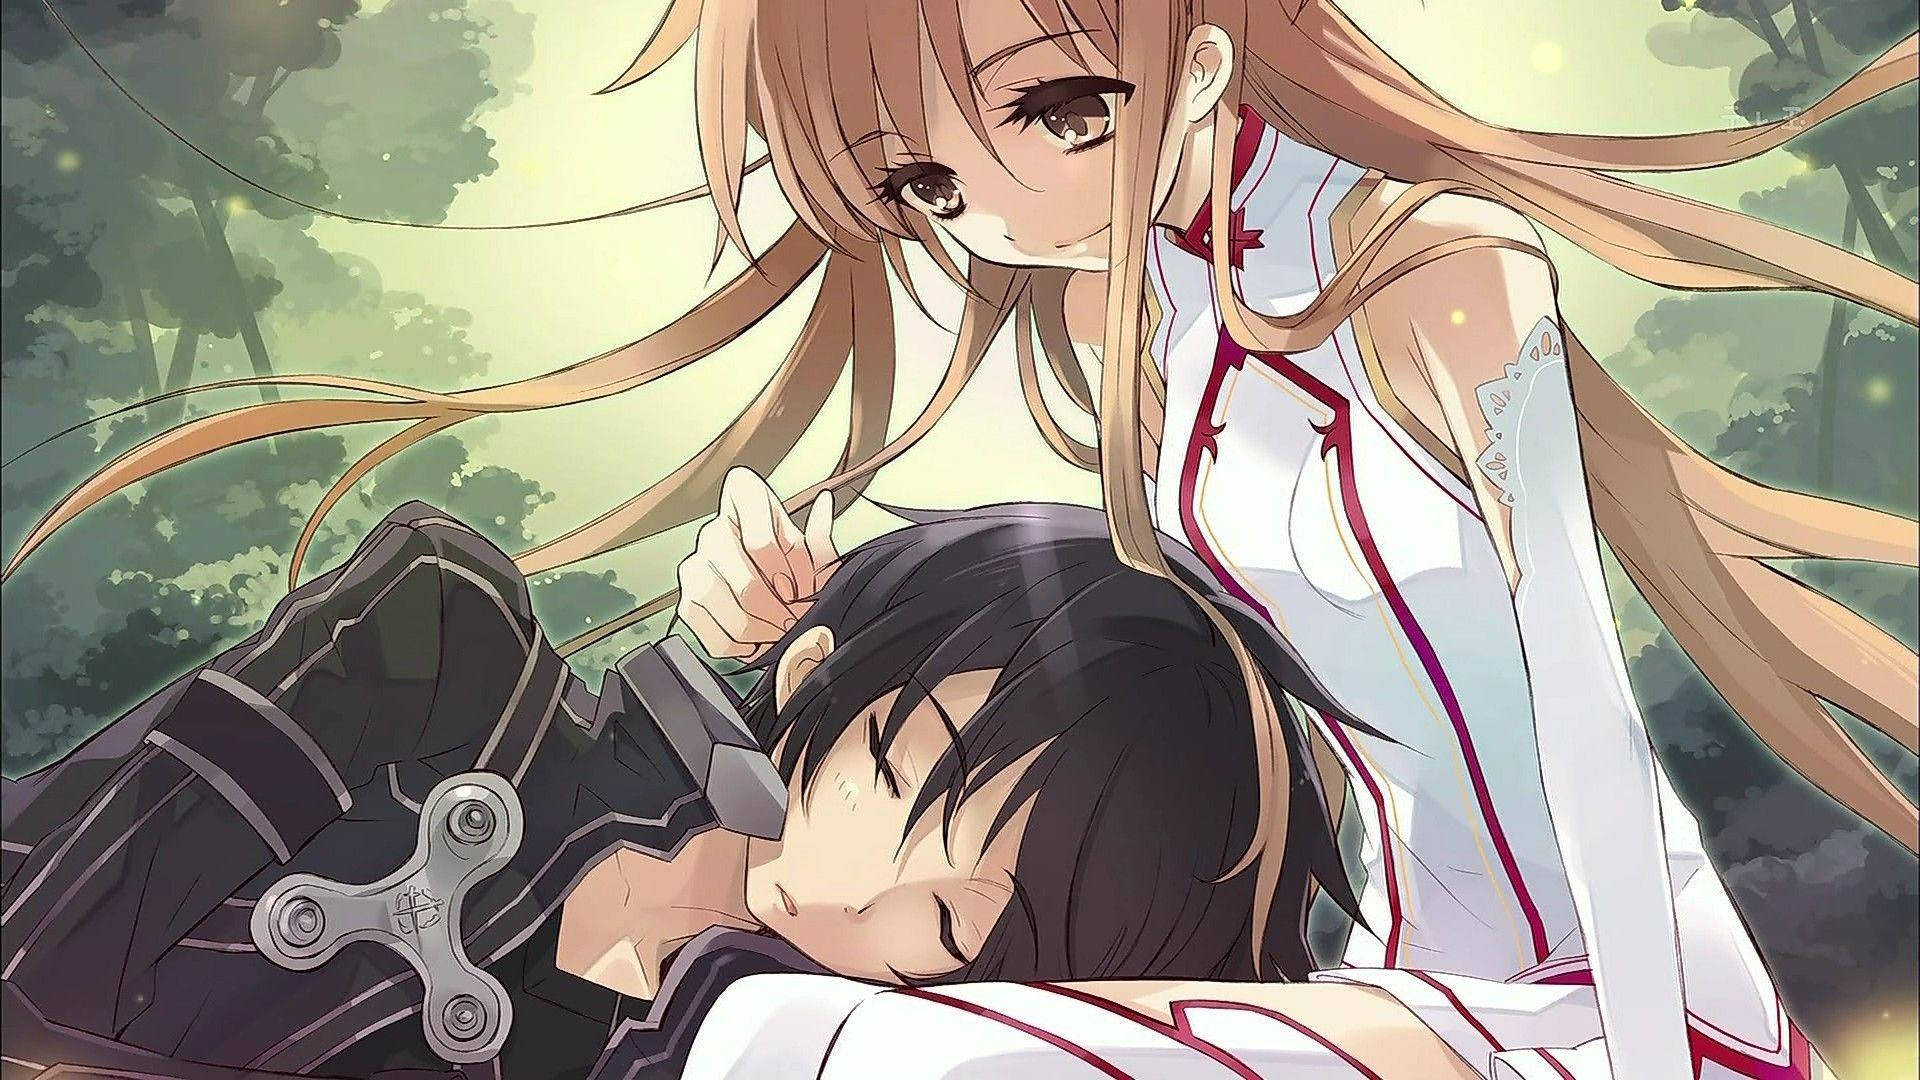 Download Anime Couple Hug Sleeping Wallpaper | Wallpapers.com